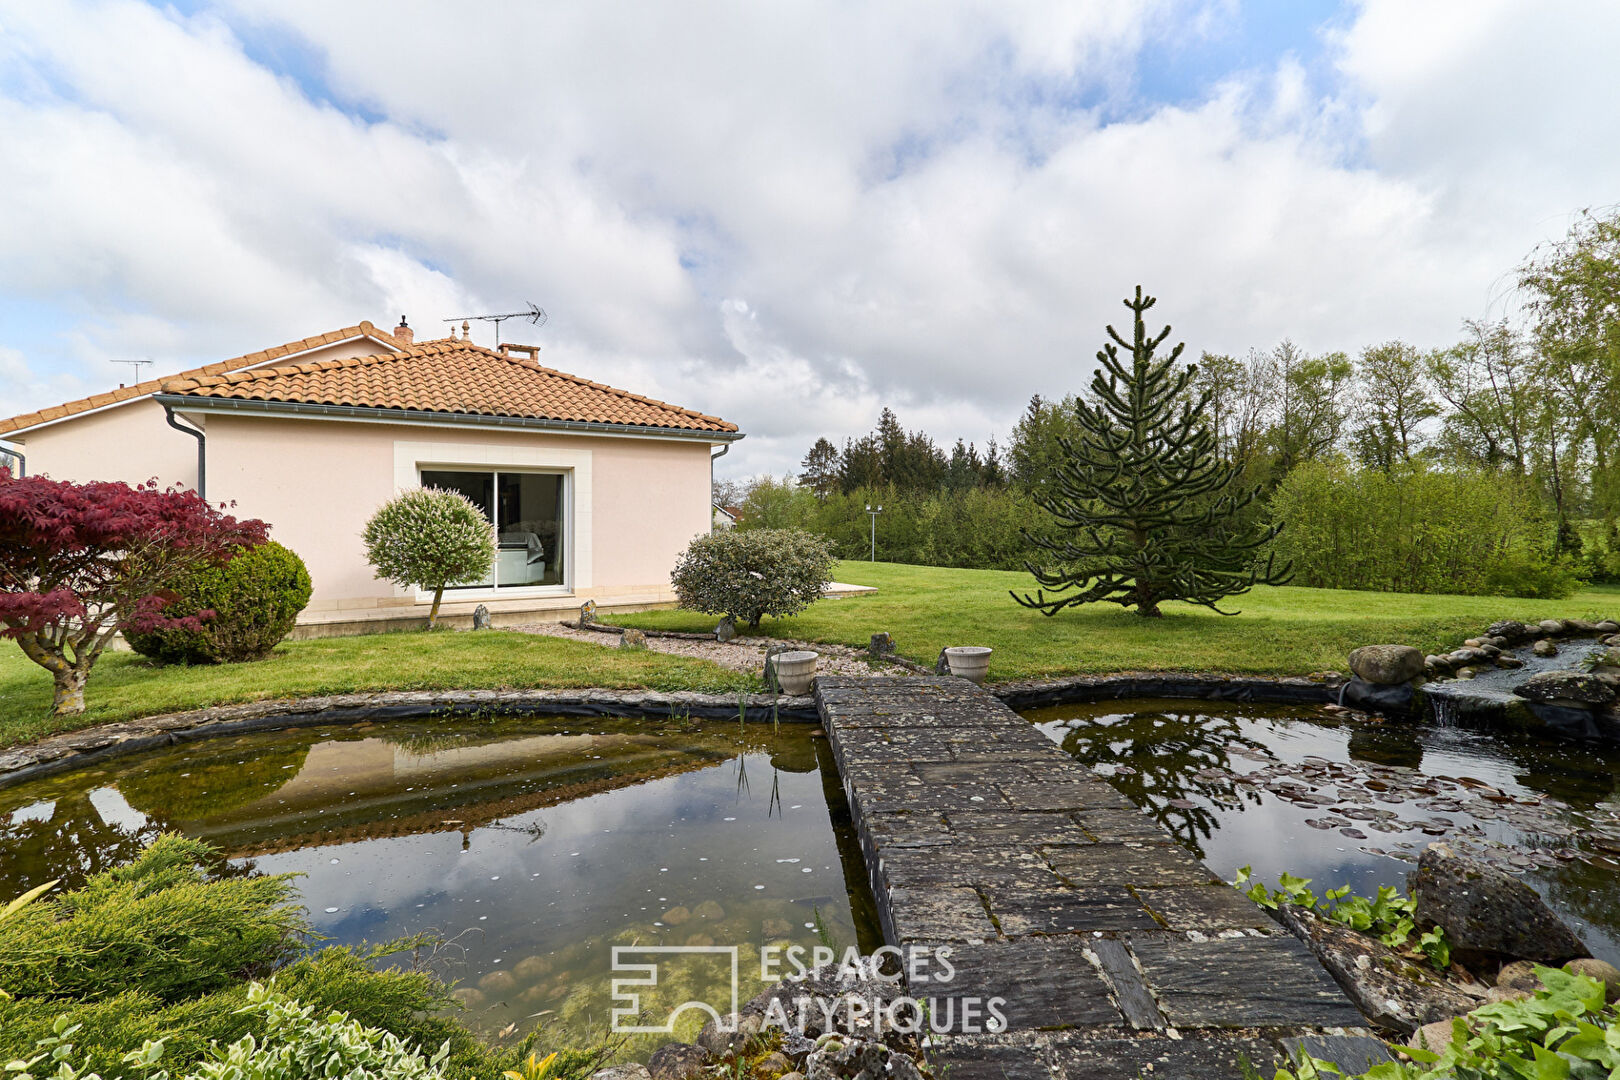 Villa moderne tout confort dans un parc avec étang privé à Sermaize les Bains.